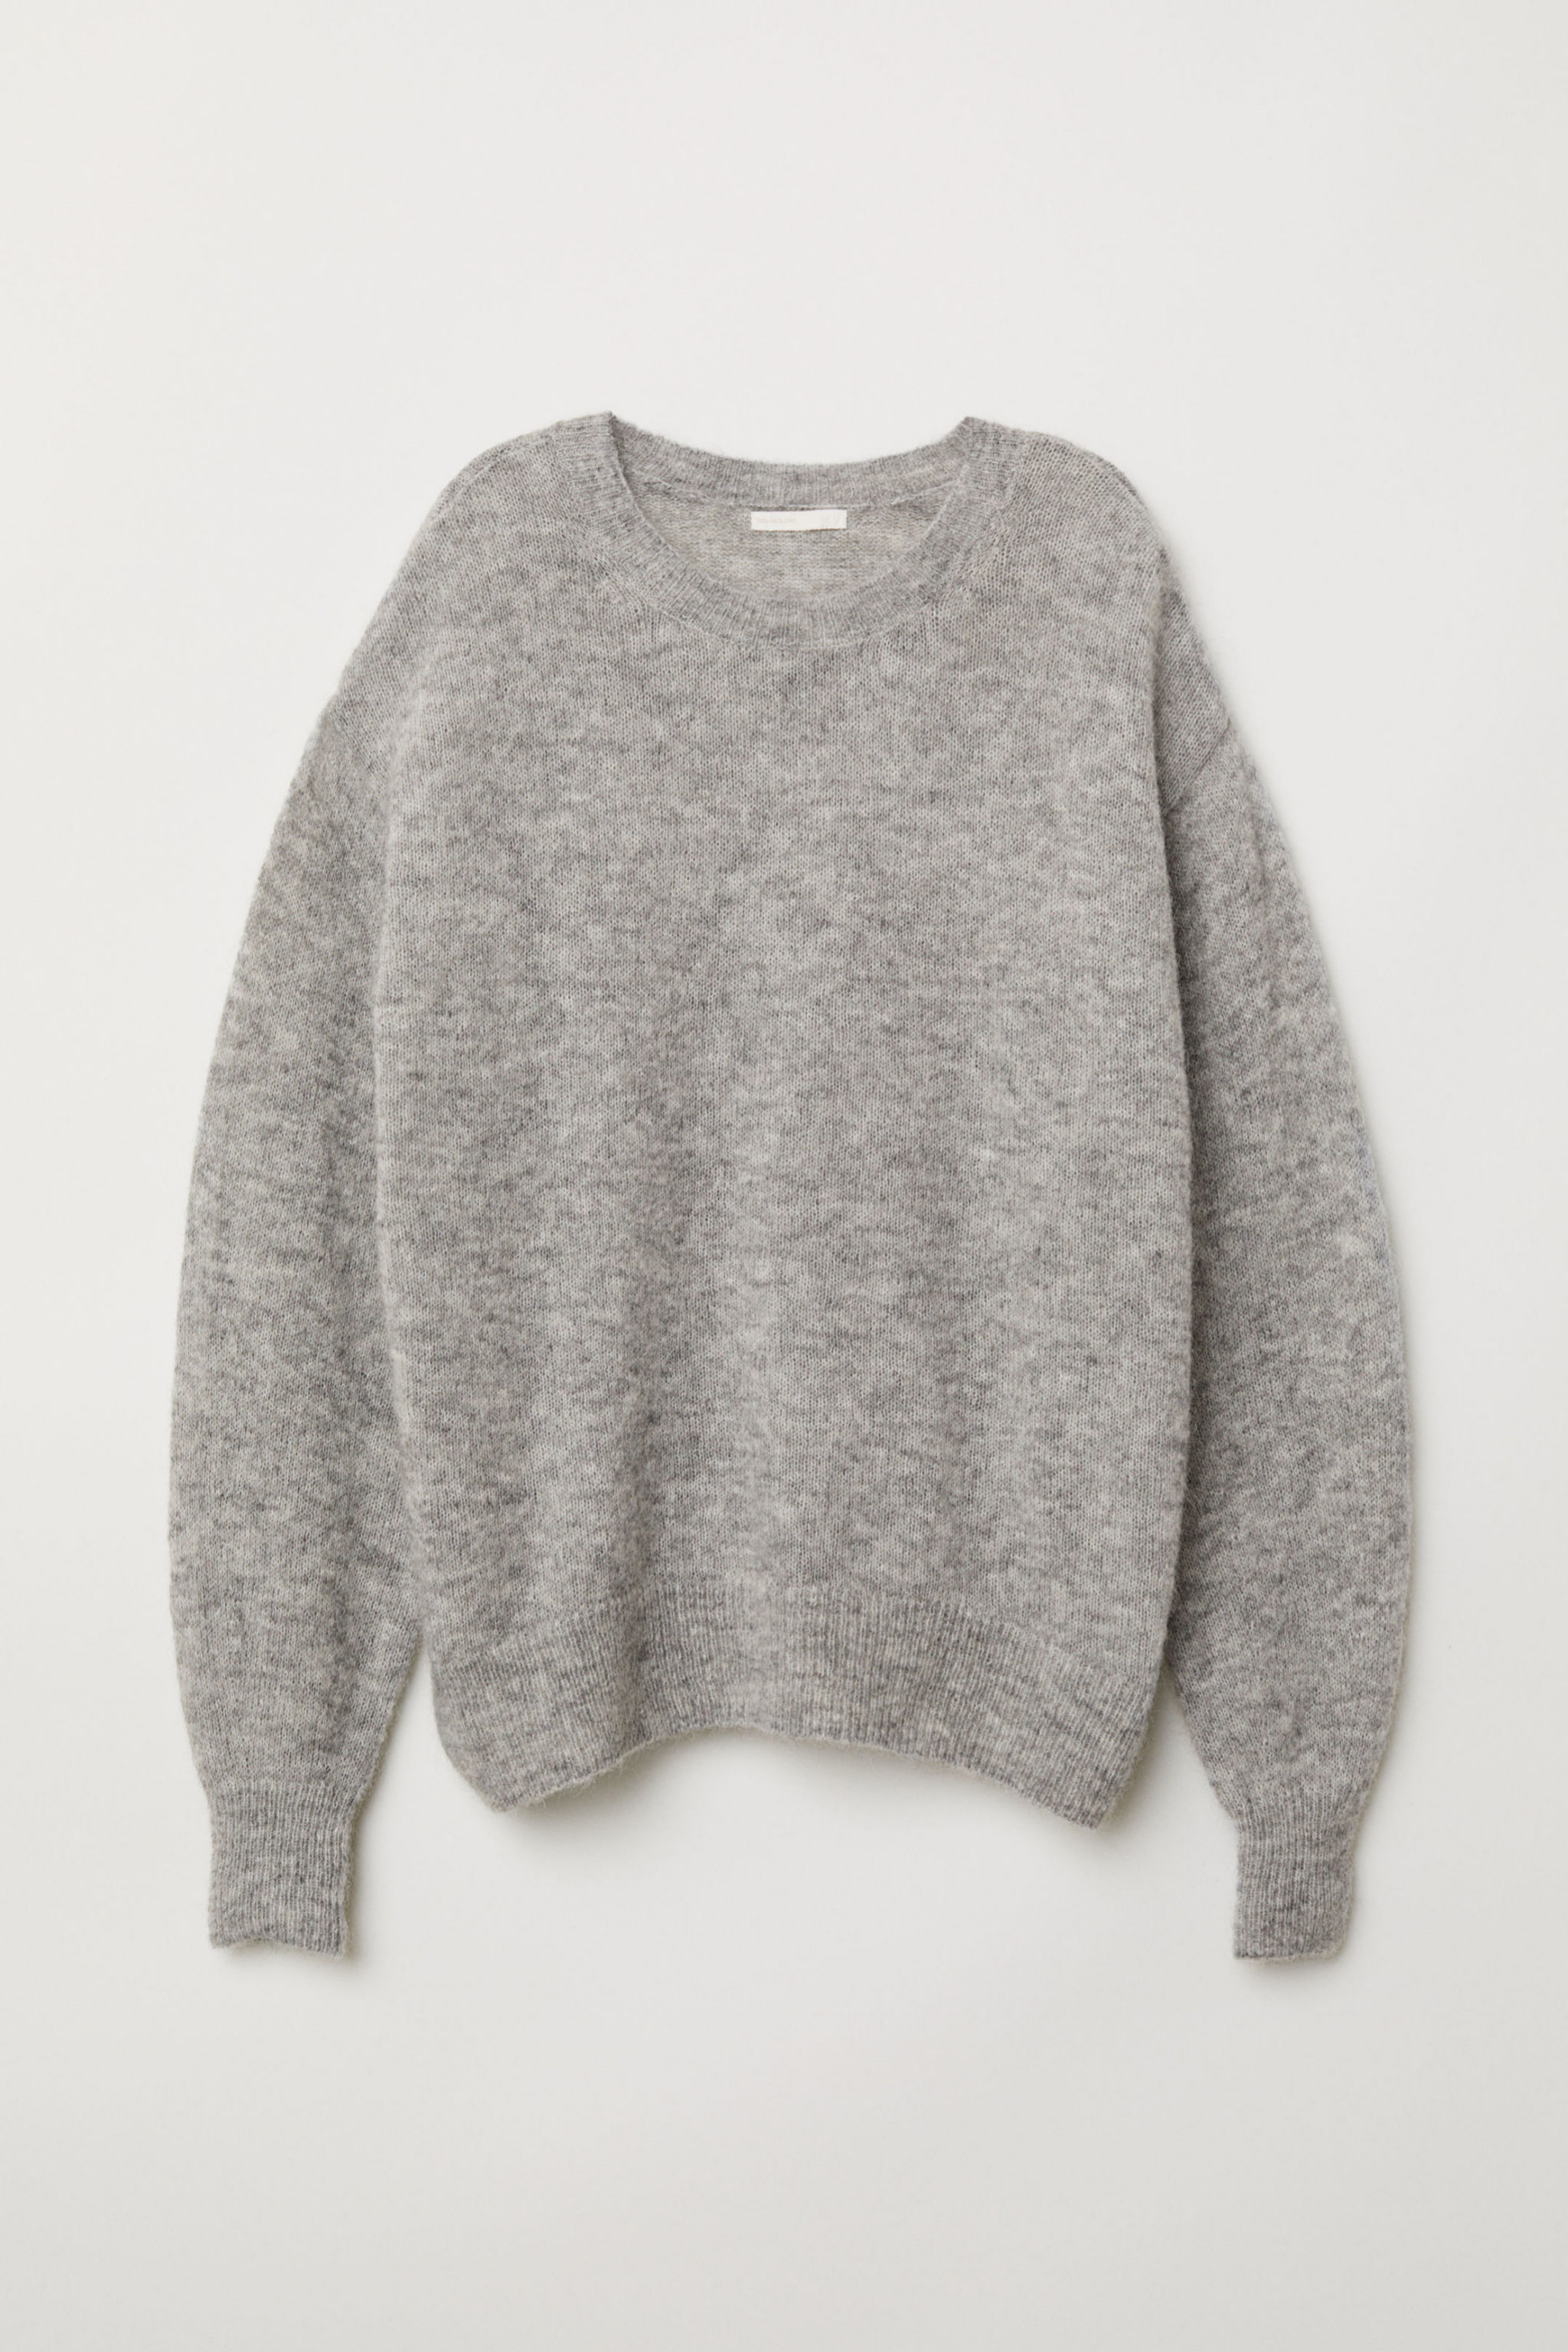 Jersey de mohair en color gris (49,99¤)